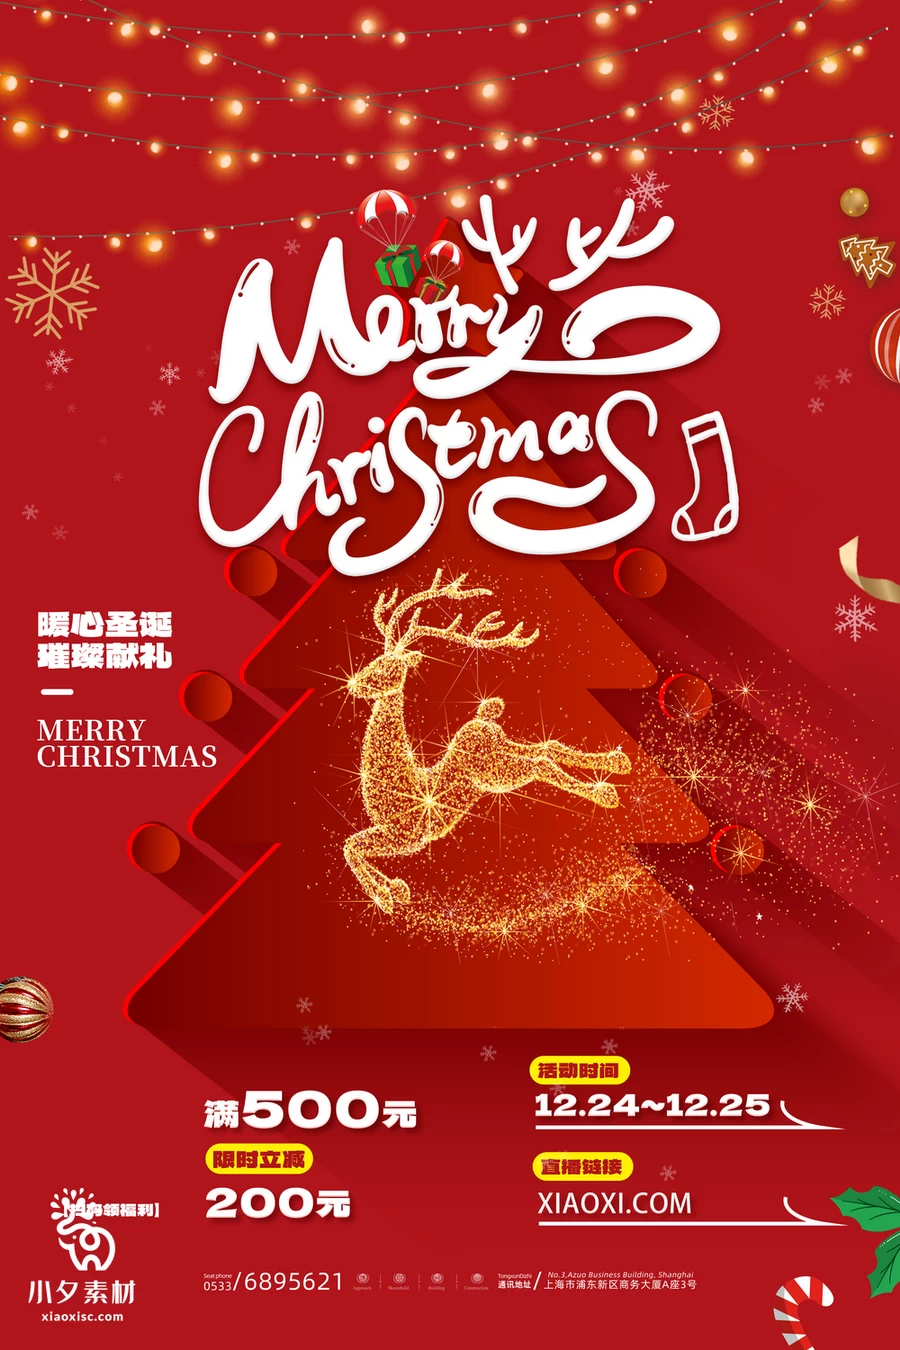 圣诞节节日节庆海报模板PSD分层设计素材【017】